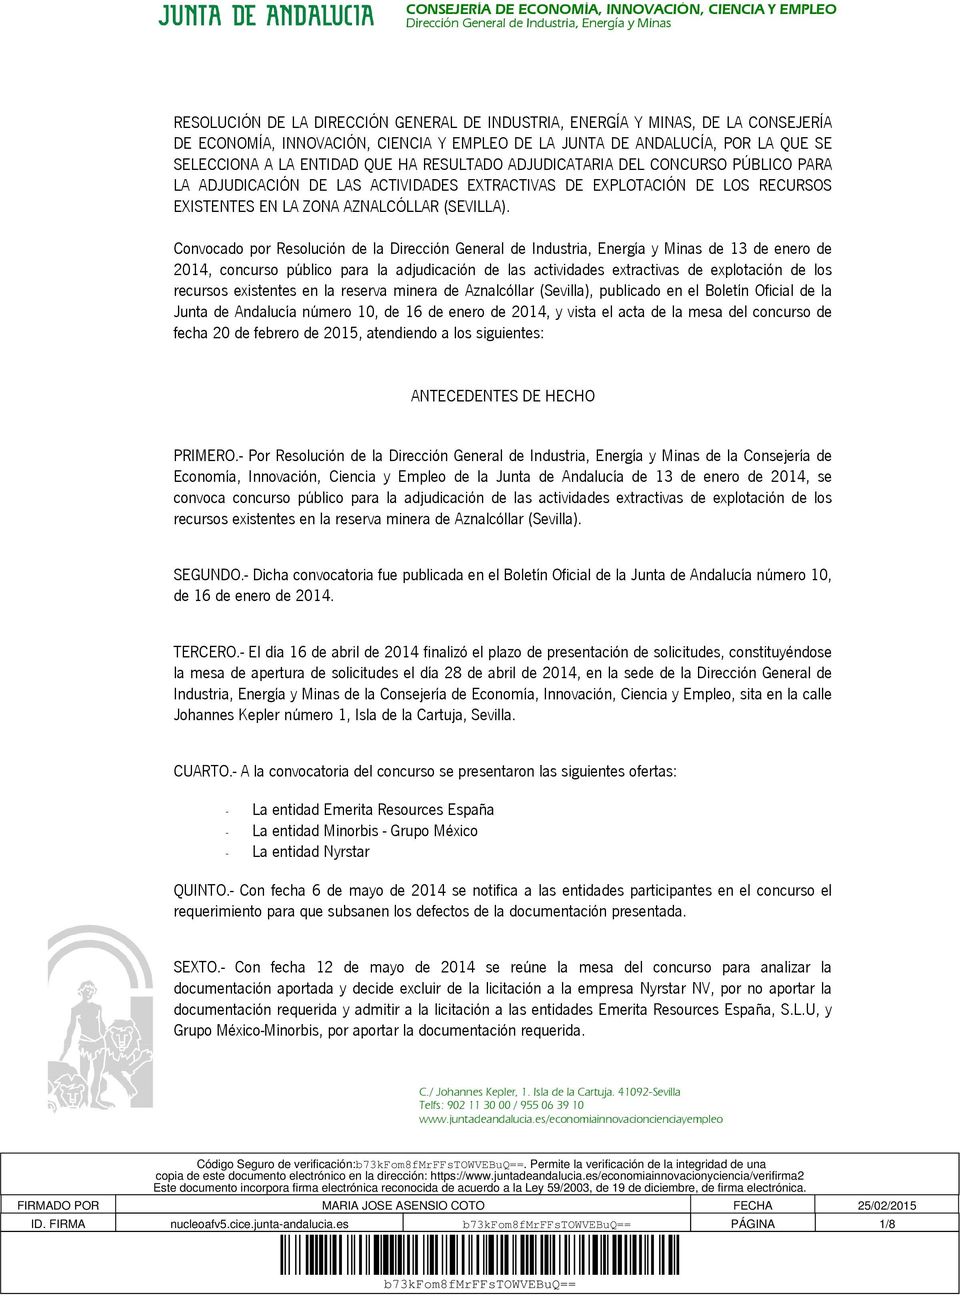 Convocado por Resolución de la de 13 de enero de 2014, concurso público para la adjudicación de las actividades extractivas de explotación de los recursos existentes en la reserva minera de